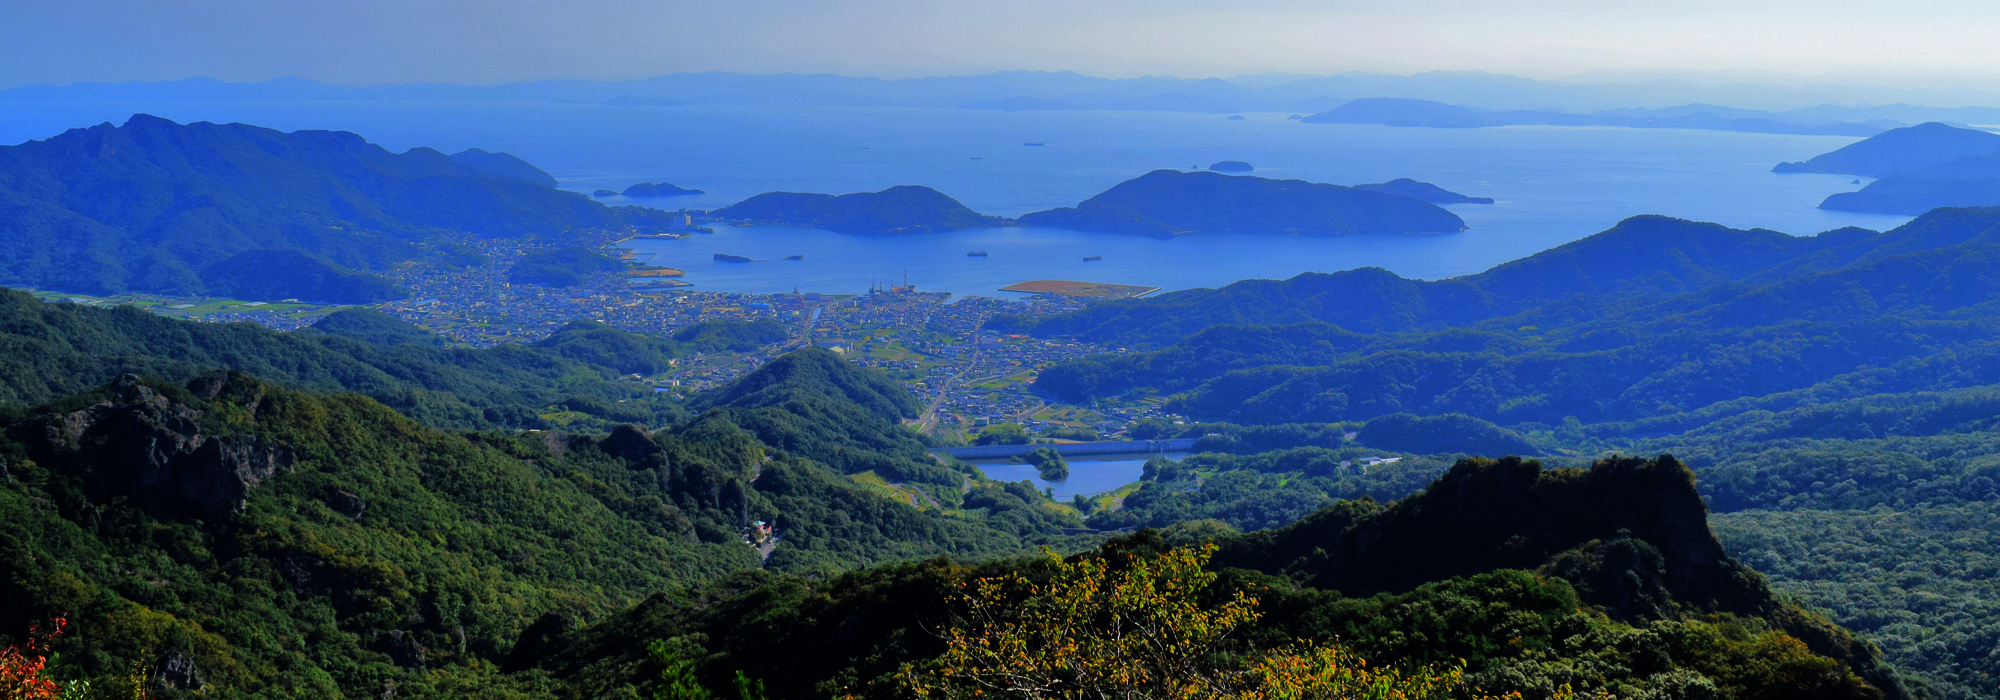 寒霞渓から眺められる瀬戸内海の綺麗な海と小豆島の大自然